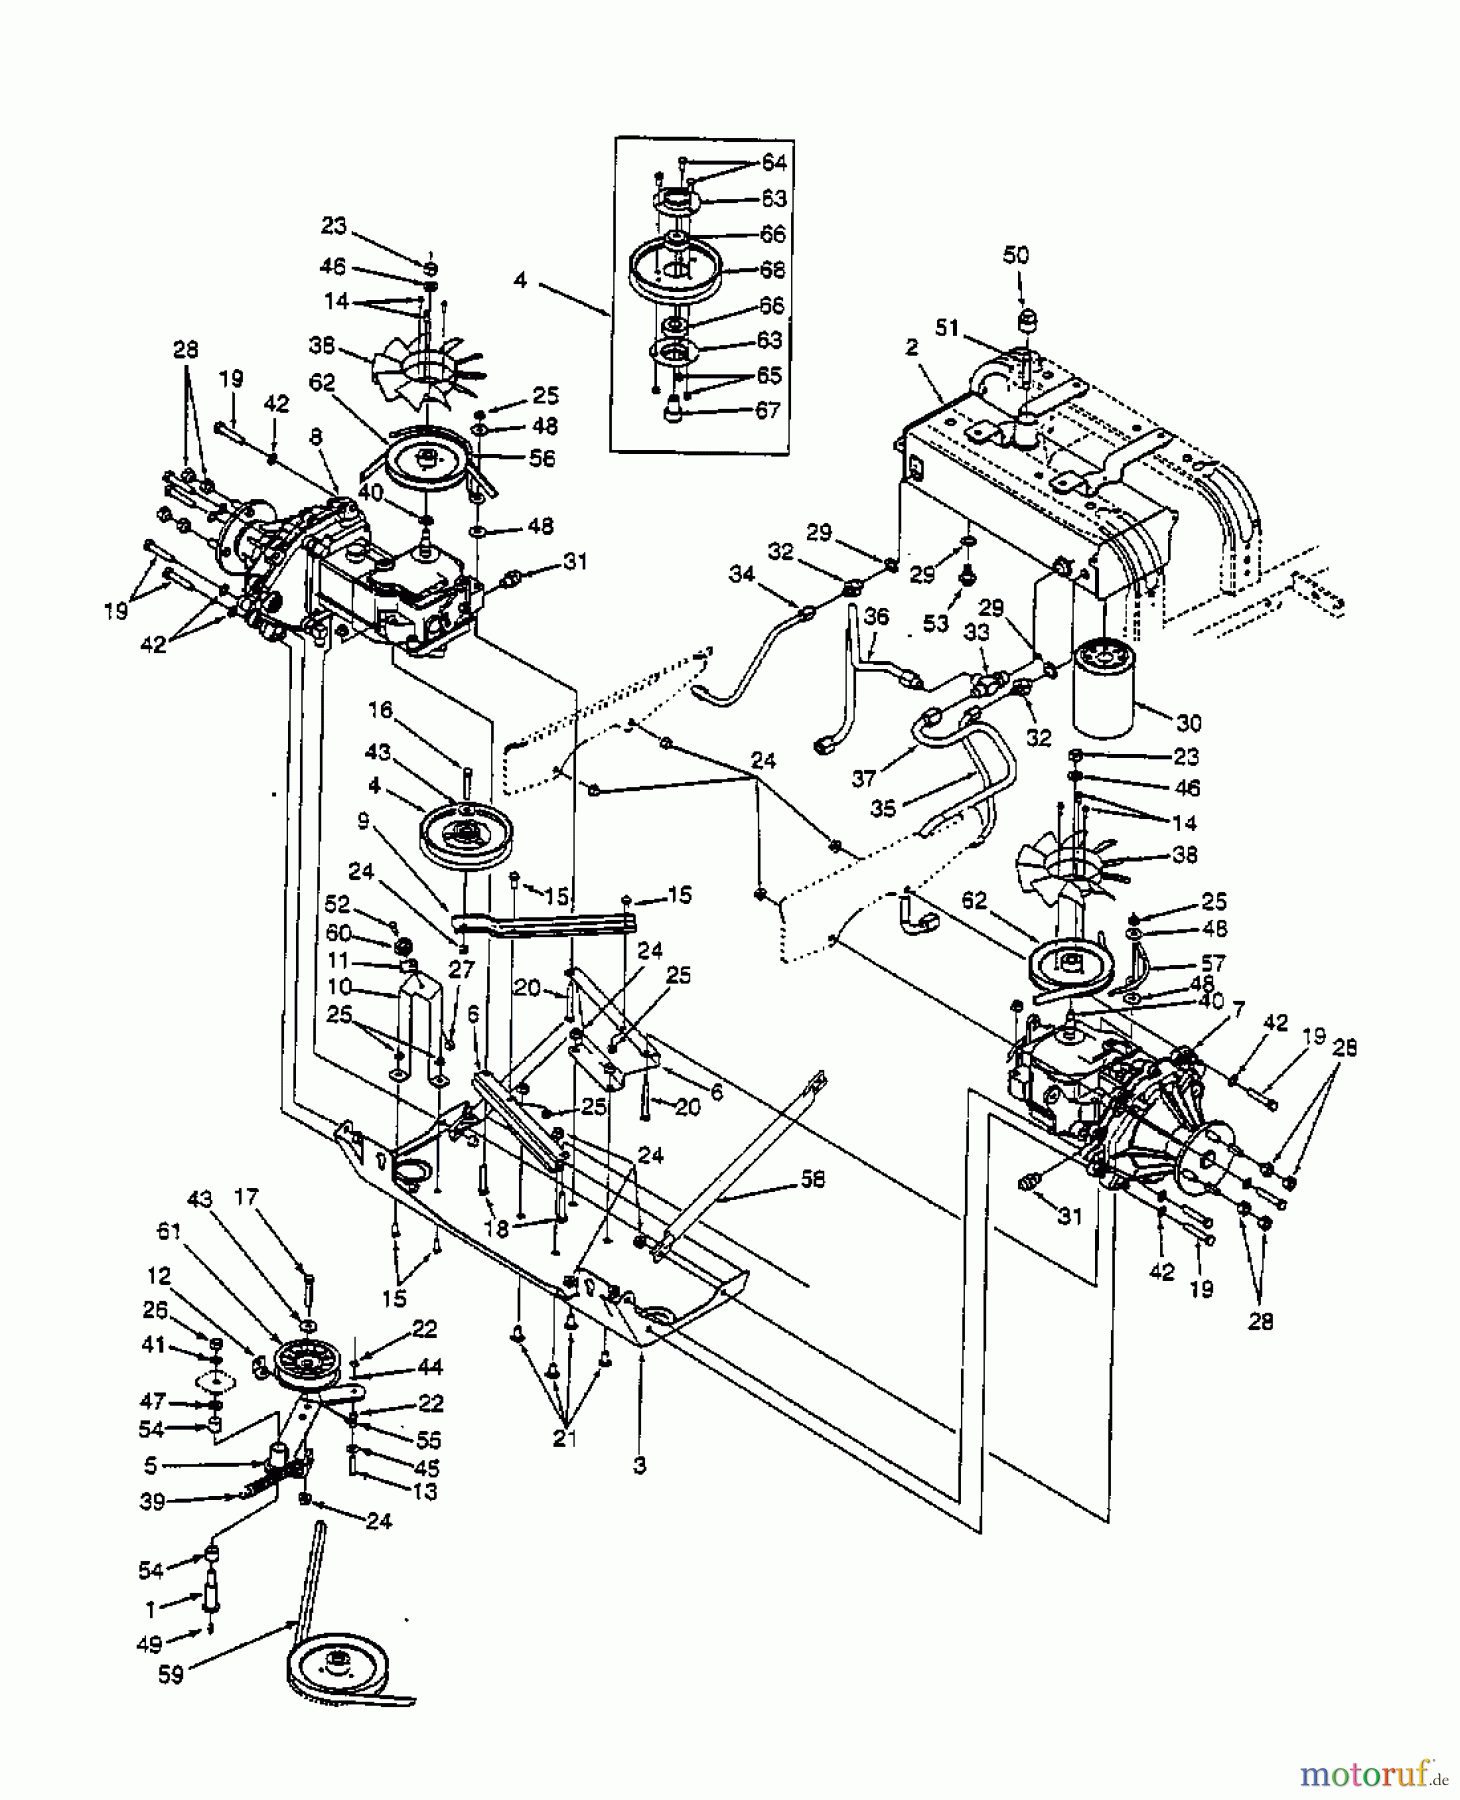  White Zero Turn 48-Z 53AC235M679  (1998) Hydrostatic gearbox